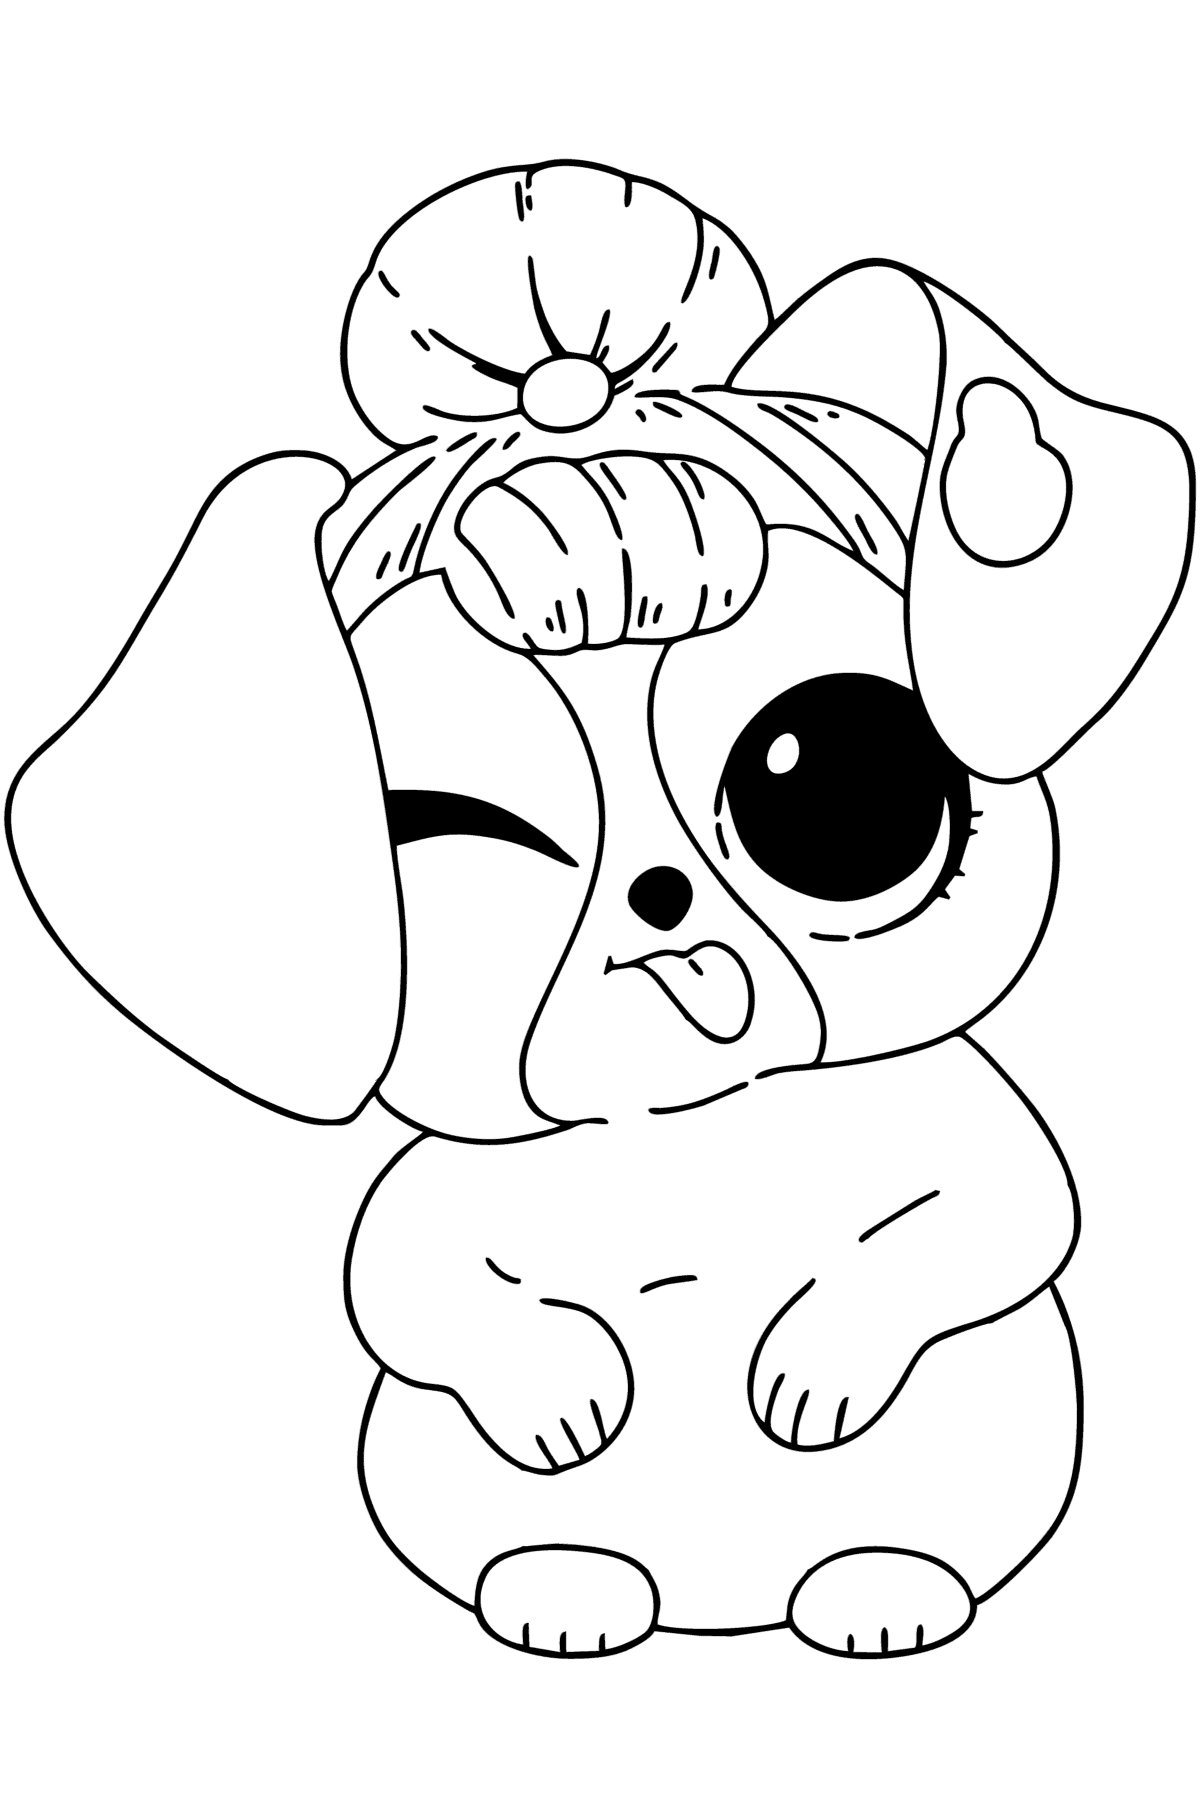 Tegning til fargelegging Dukke Pet Cute Puppy de LOL Surprise - Tegninger til fargelegging for barn